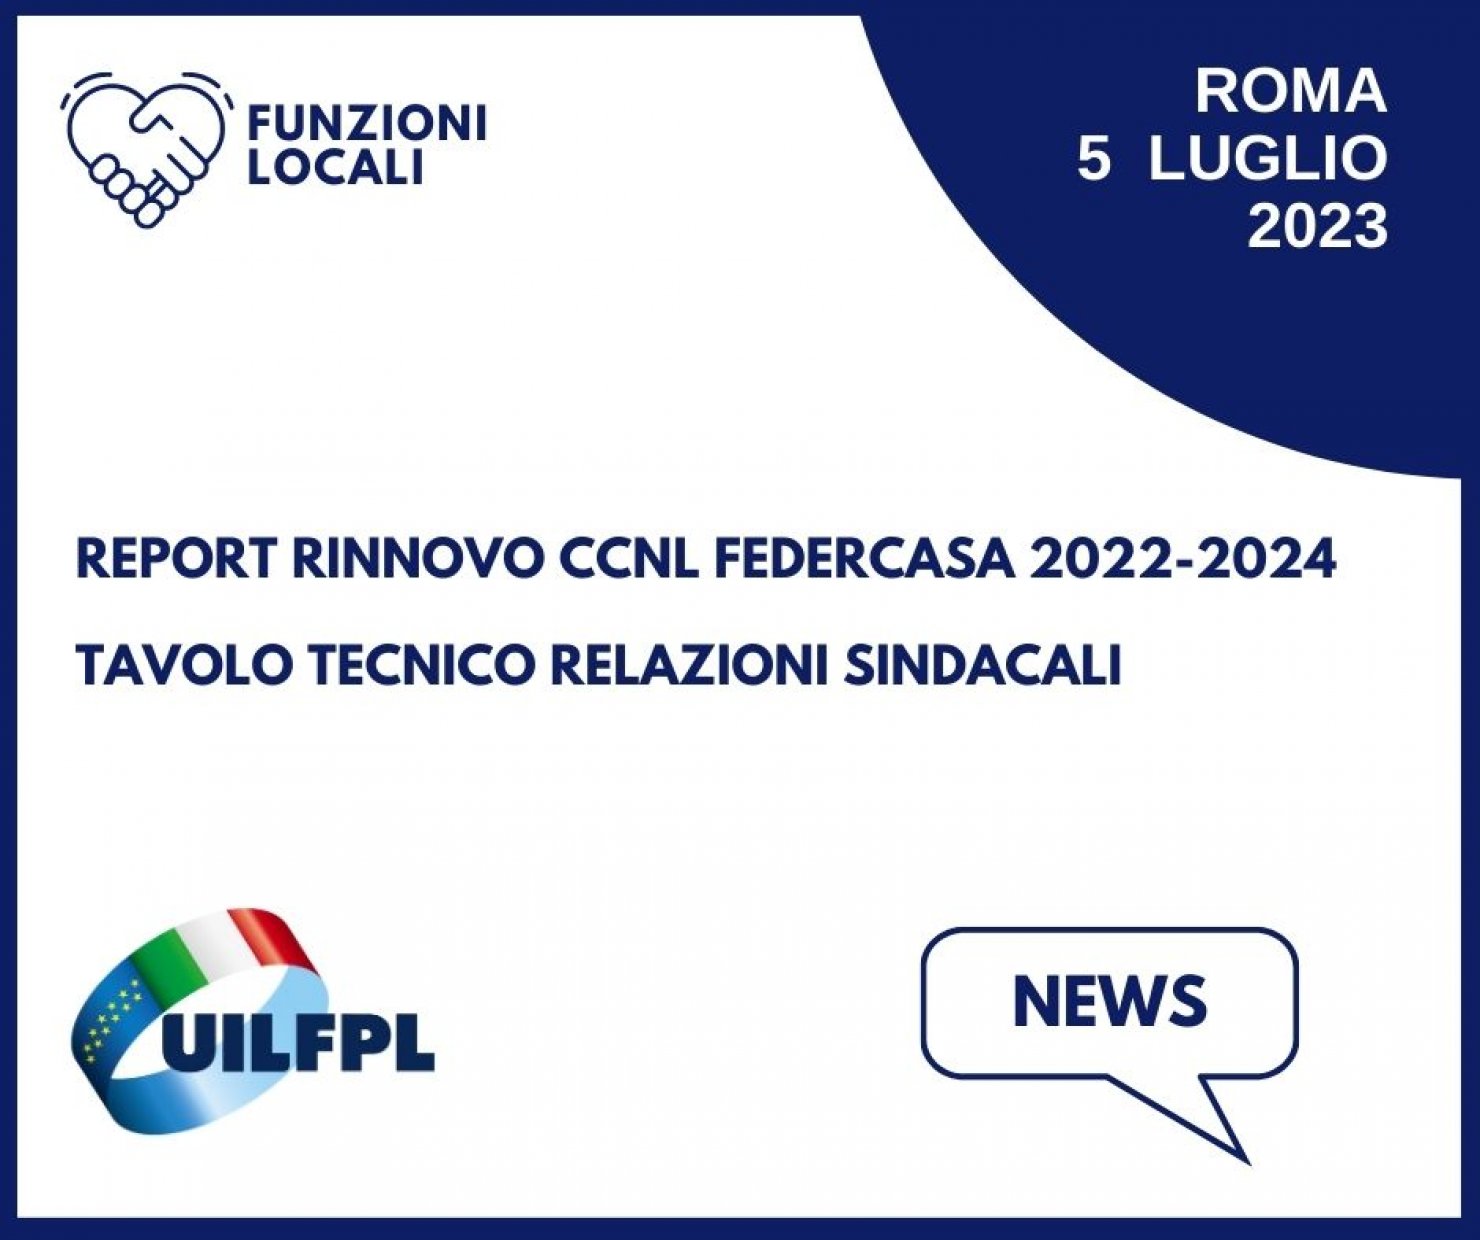 Rinnovo CCNL Federcasa 2022-2024. Tavolo tecnico Relazioni sindacali